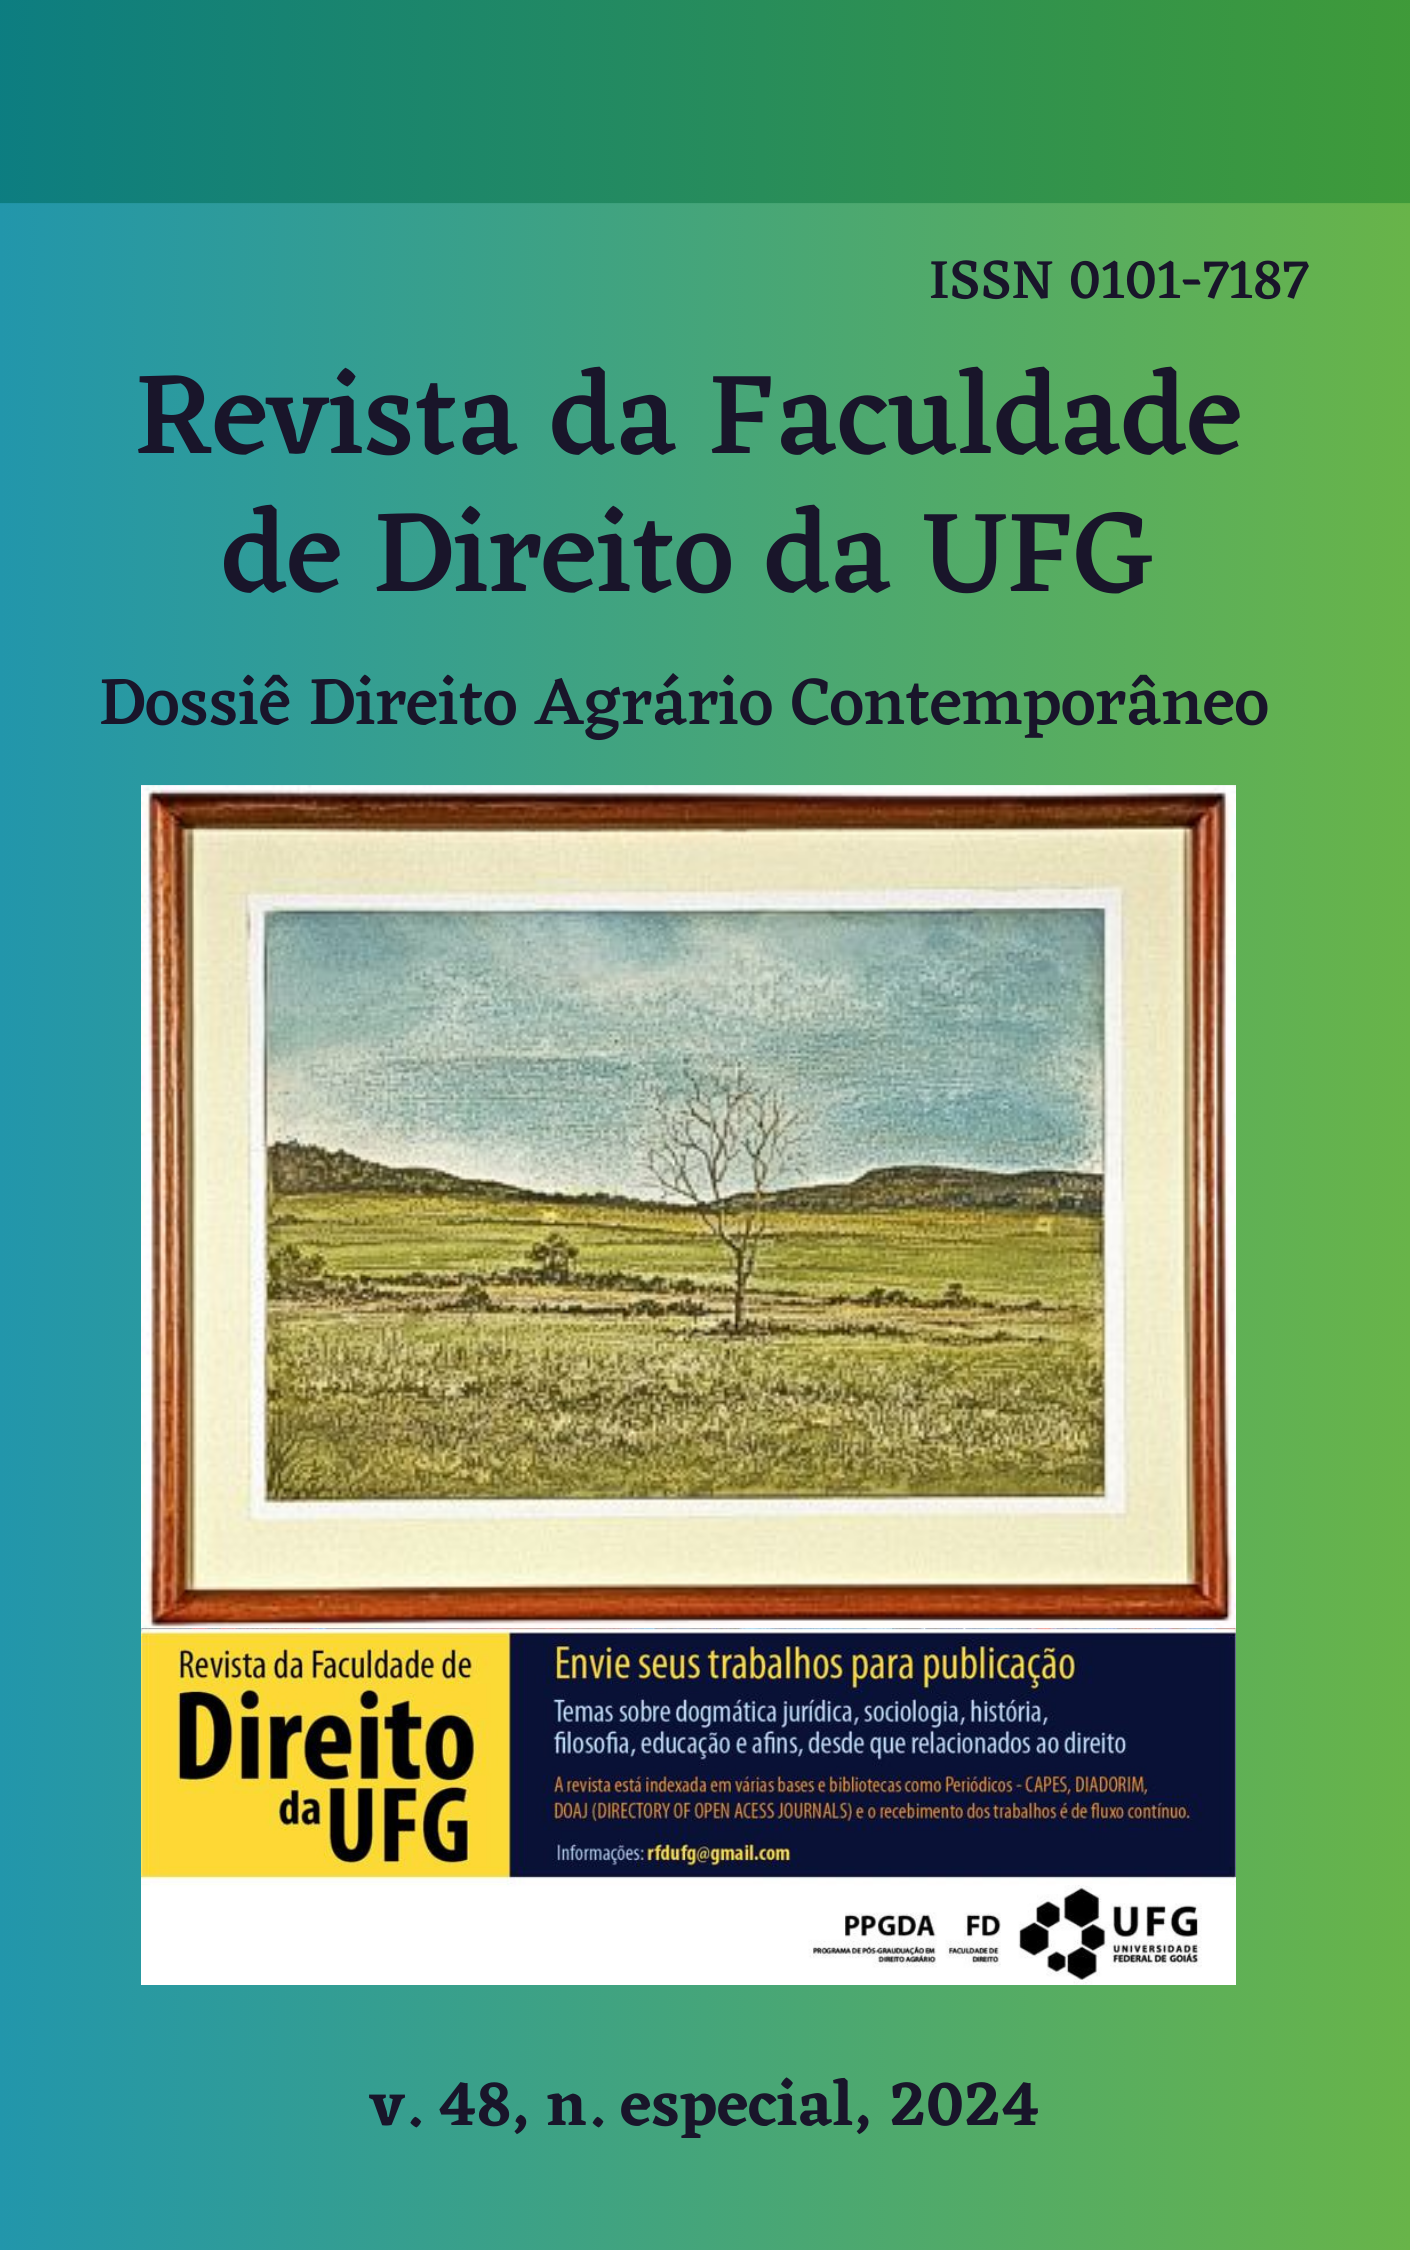 					Visualizar v. 48 n. especial (2024): REVISTA DA FACULDADE DE DIREITO DA UFG - Dossiê Direito Agrário Contemporâneo
				